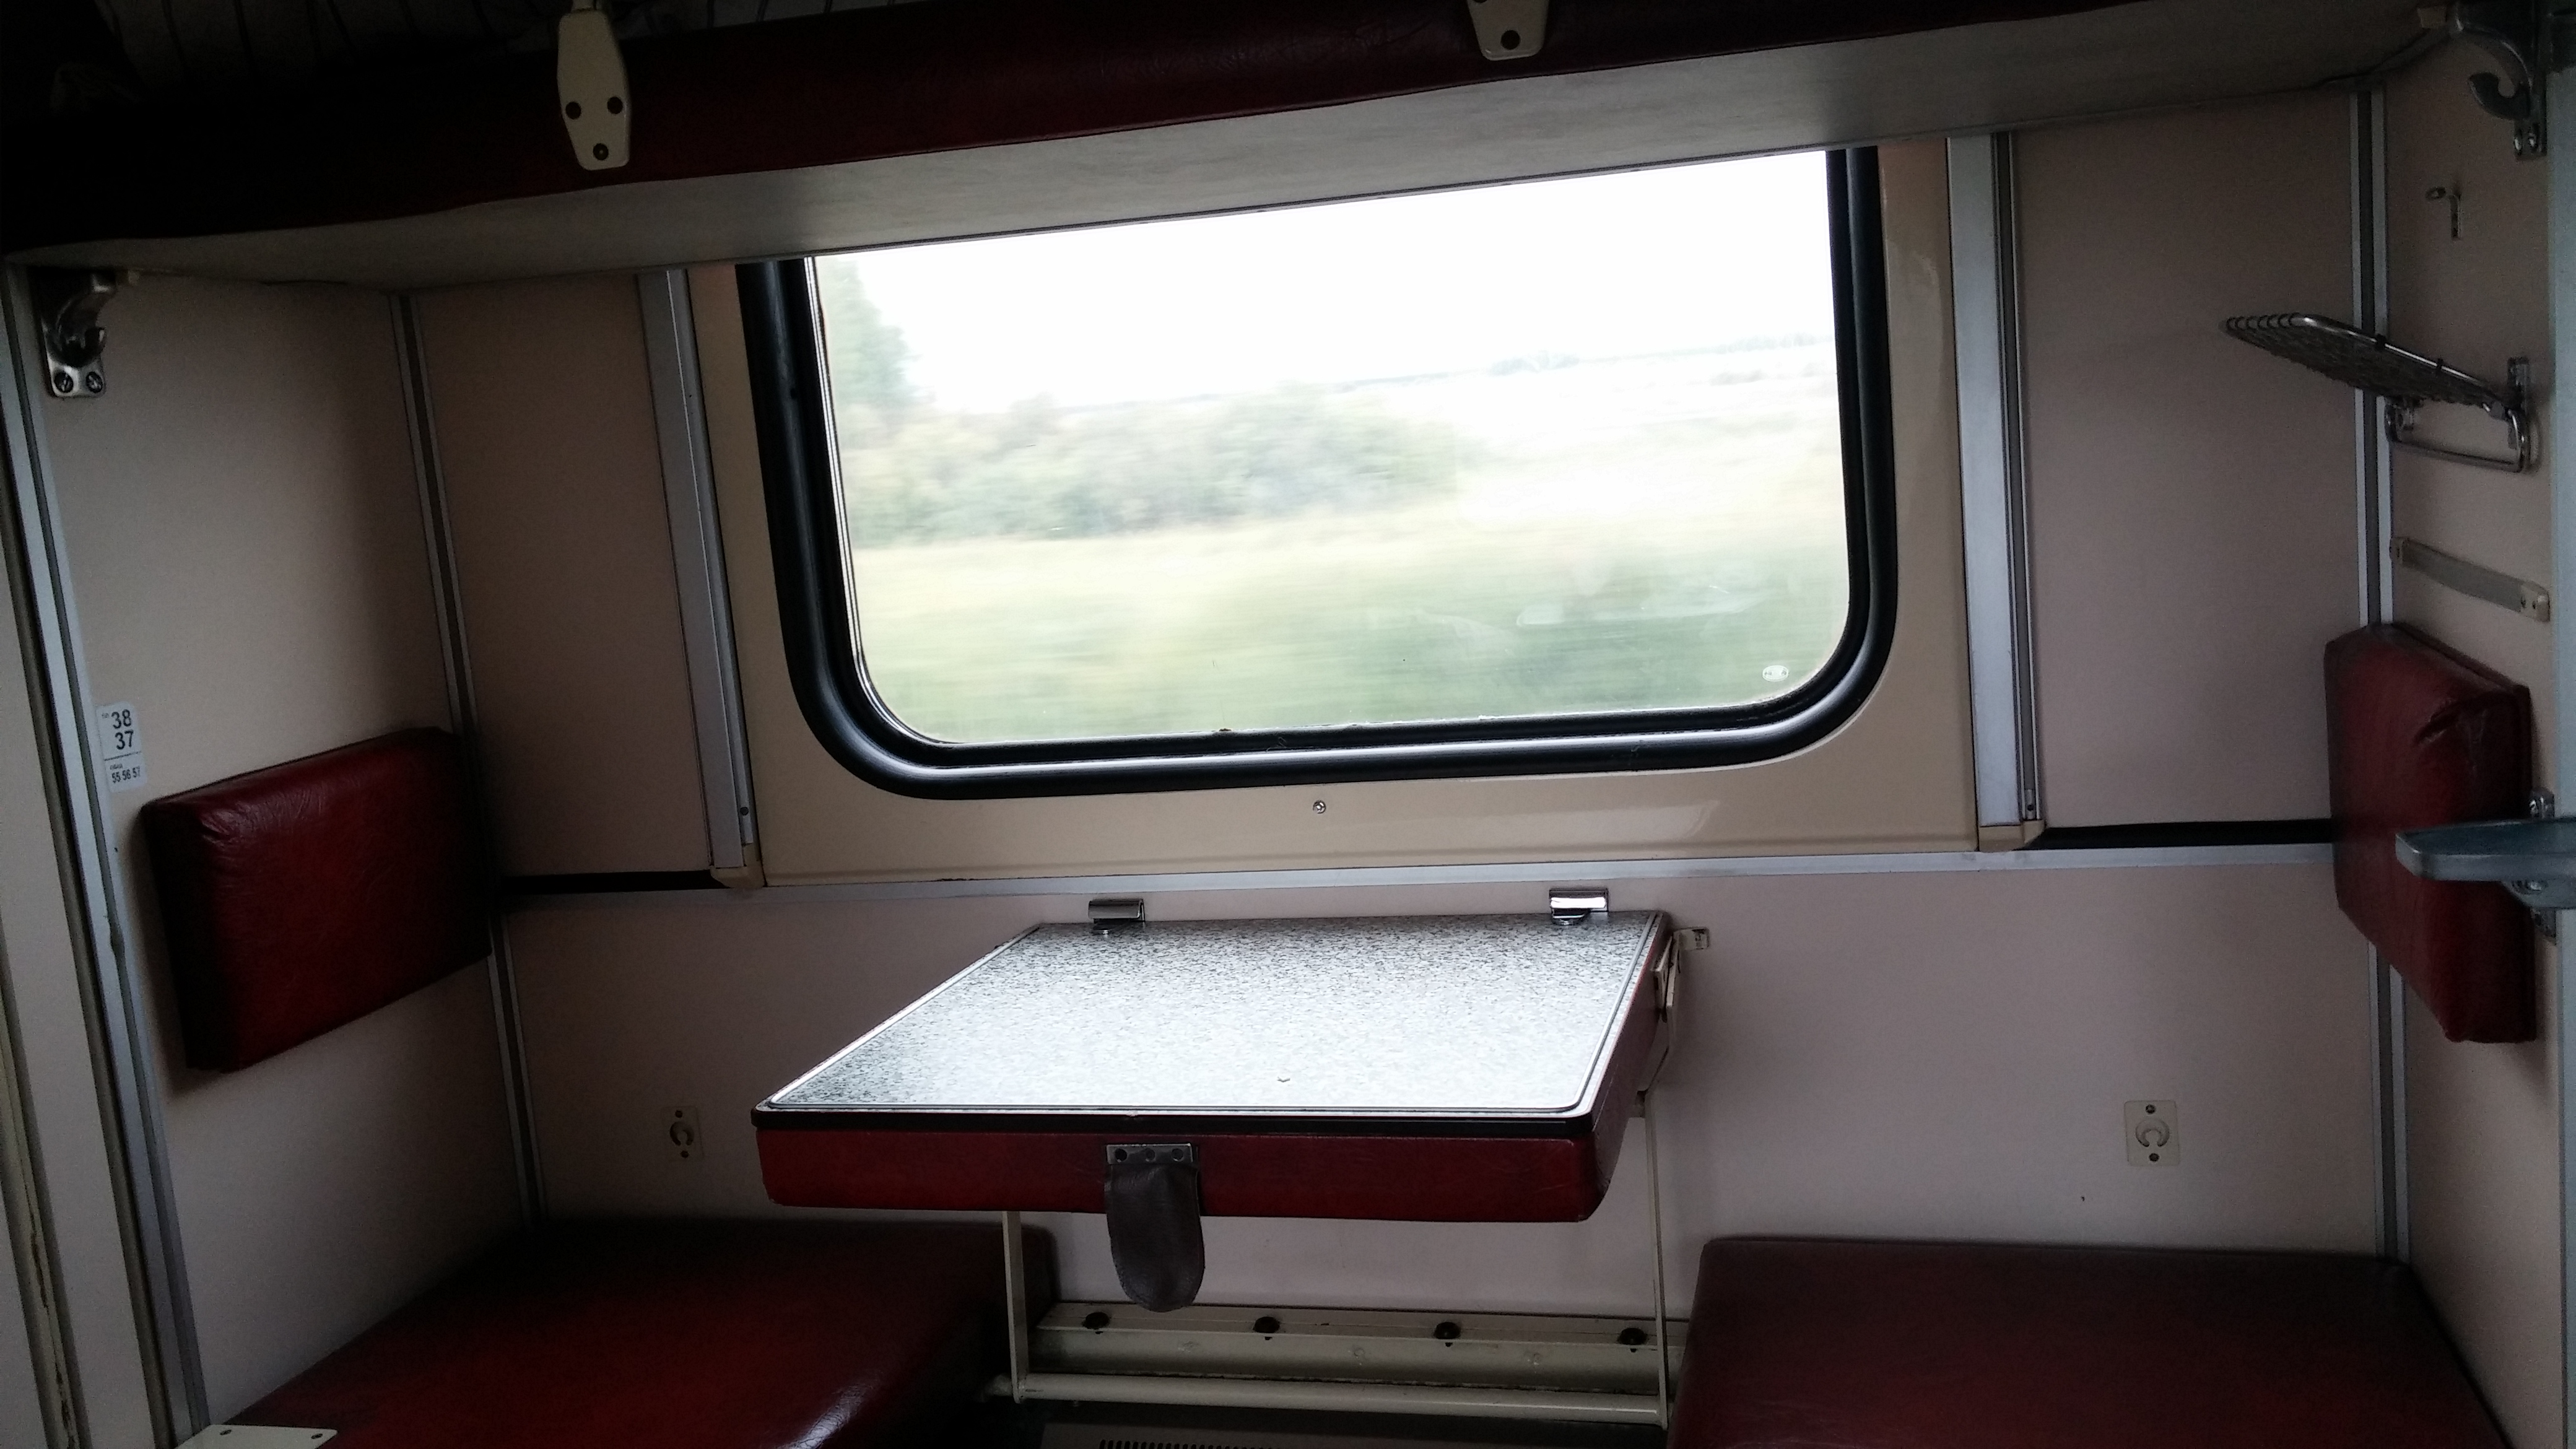 Oldalsó ülések a vonaton